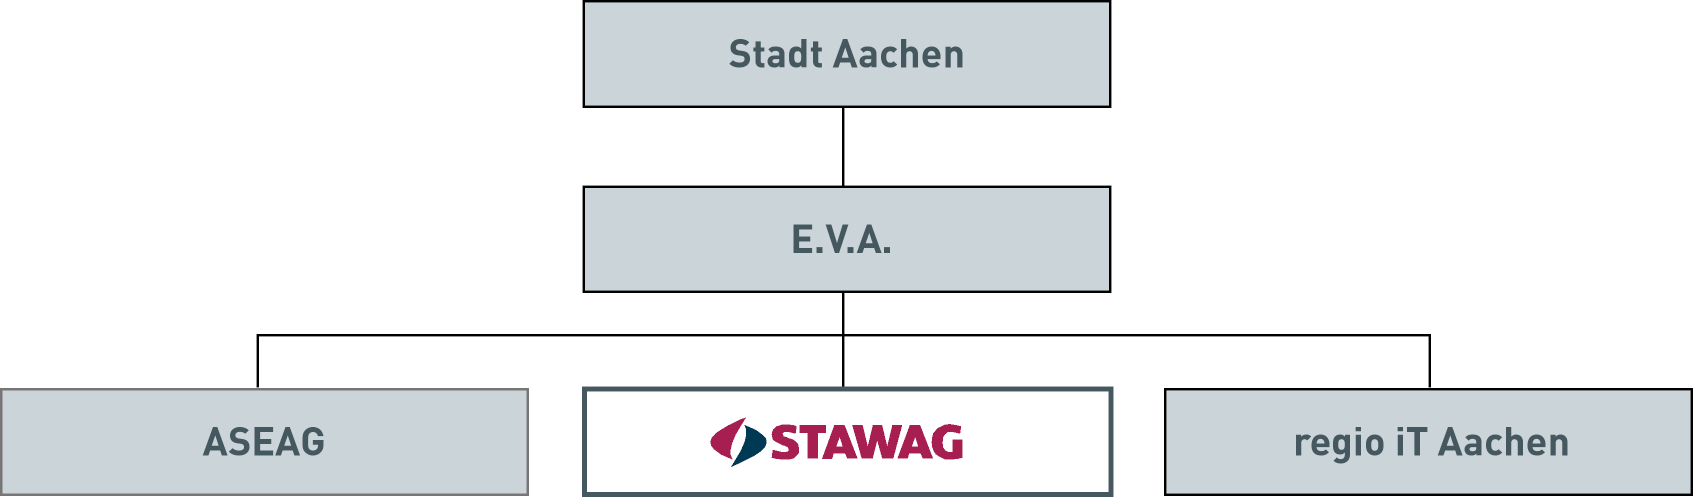 Die STAWAG als kommunales Unternehmen Die STAWAG ist eine hundertprozentige Tochter der E.V.A., Energieversorgungs- und Verkehrsgesellschaft mbh Aachen.